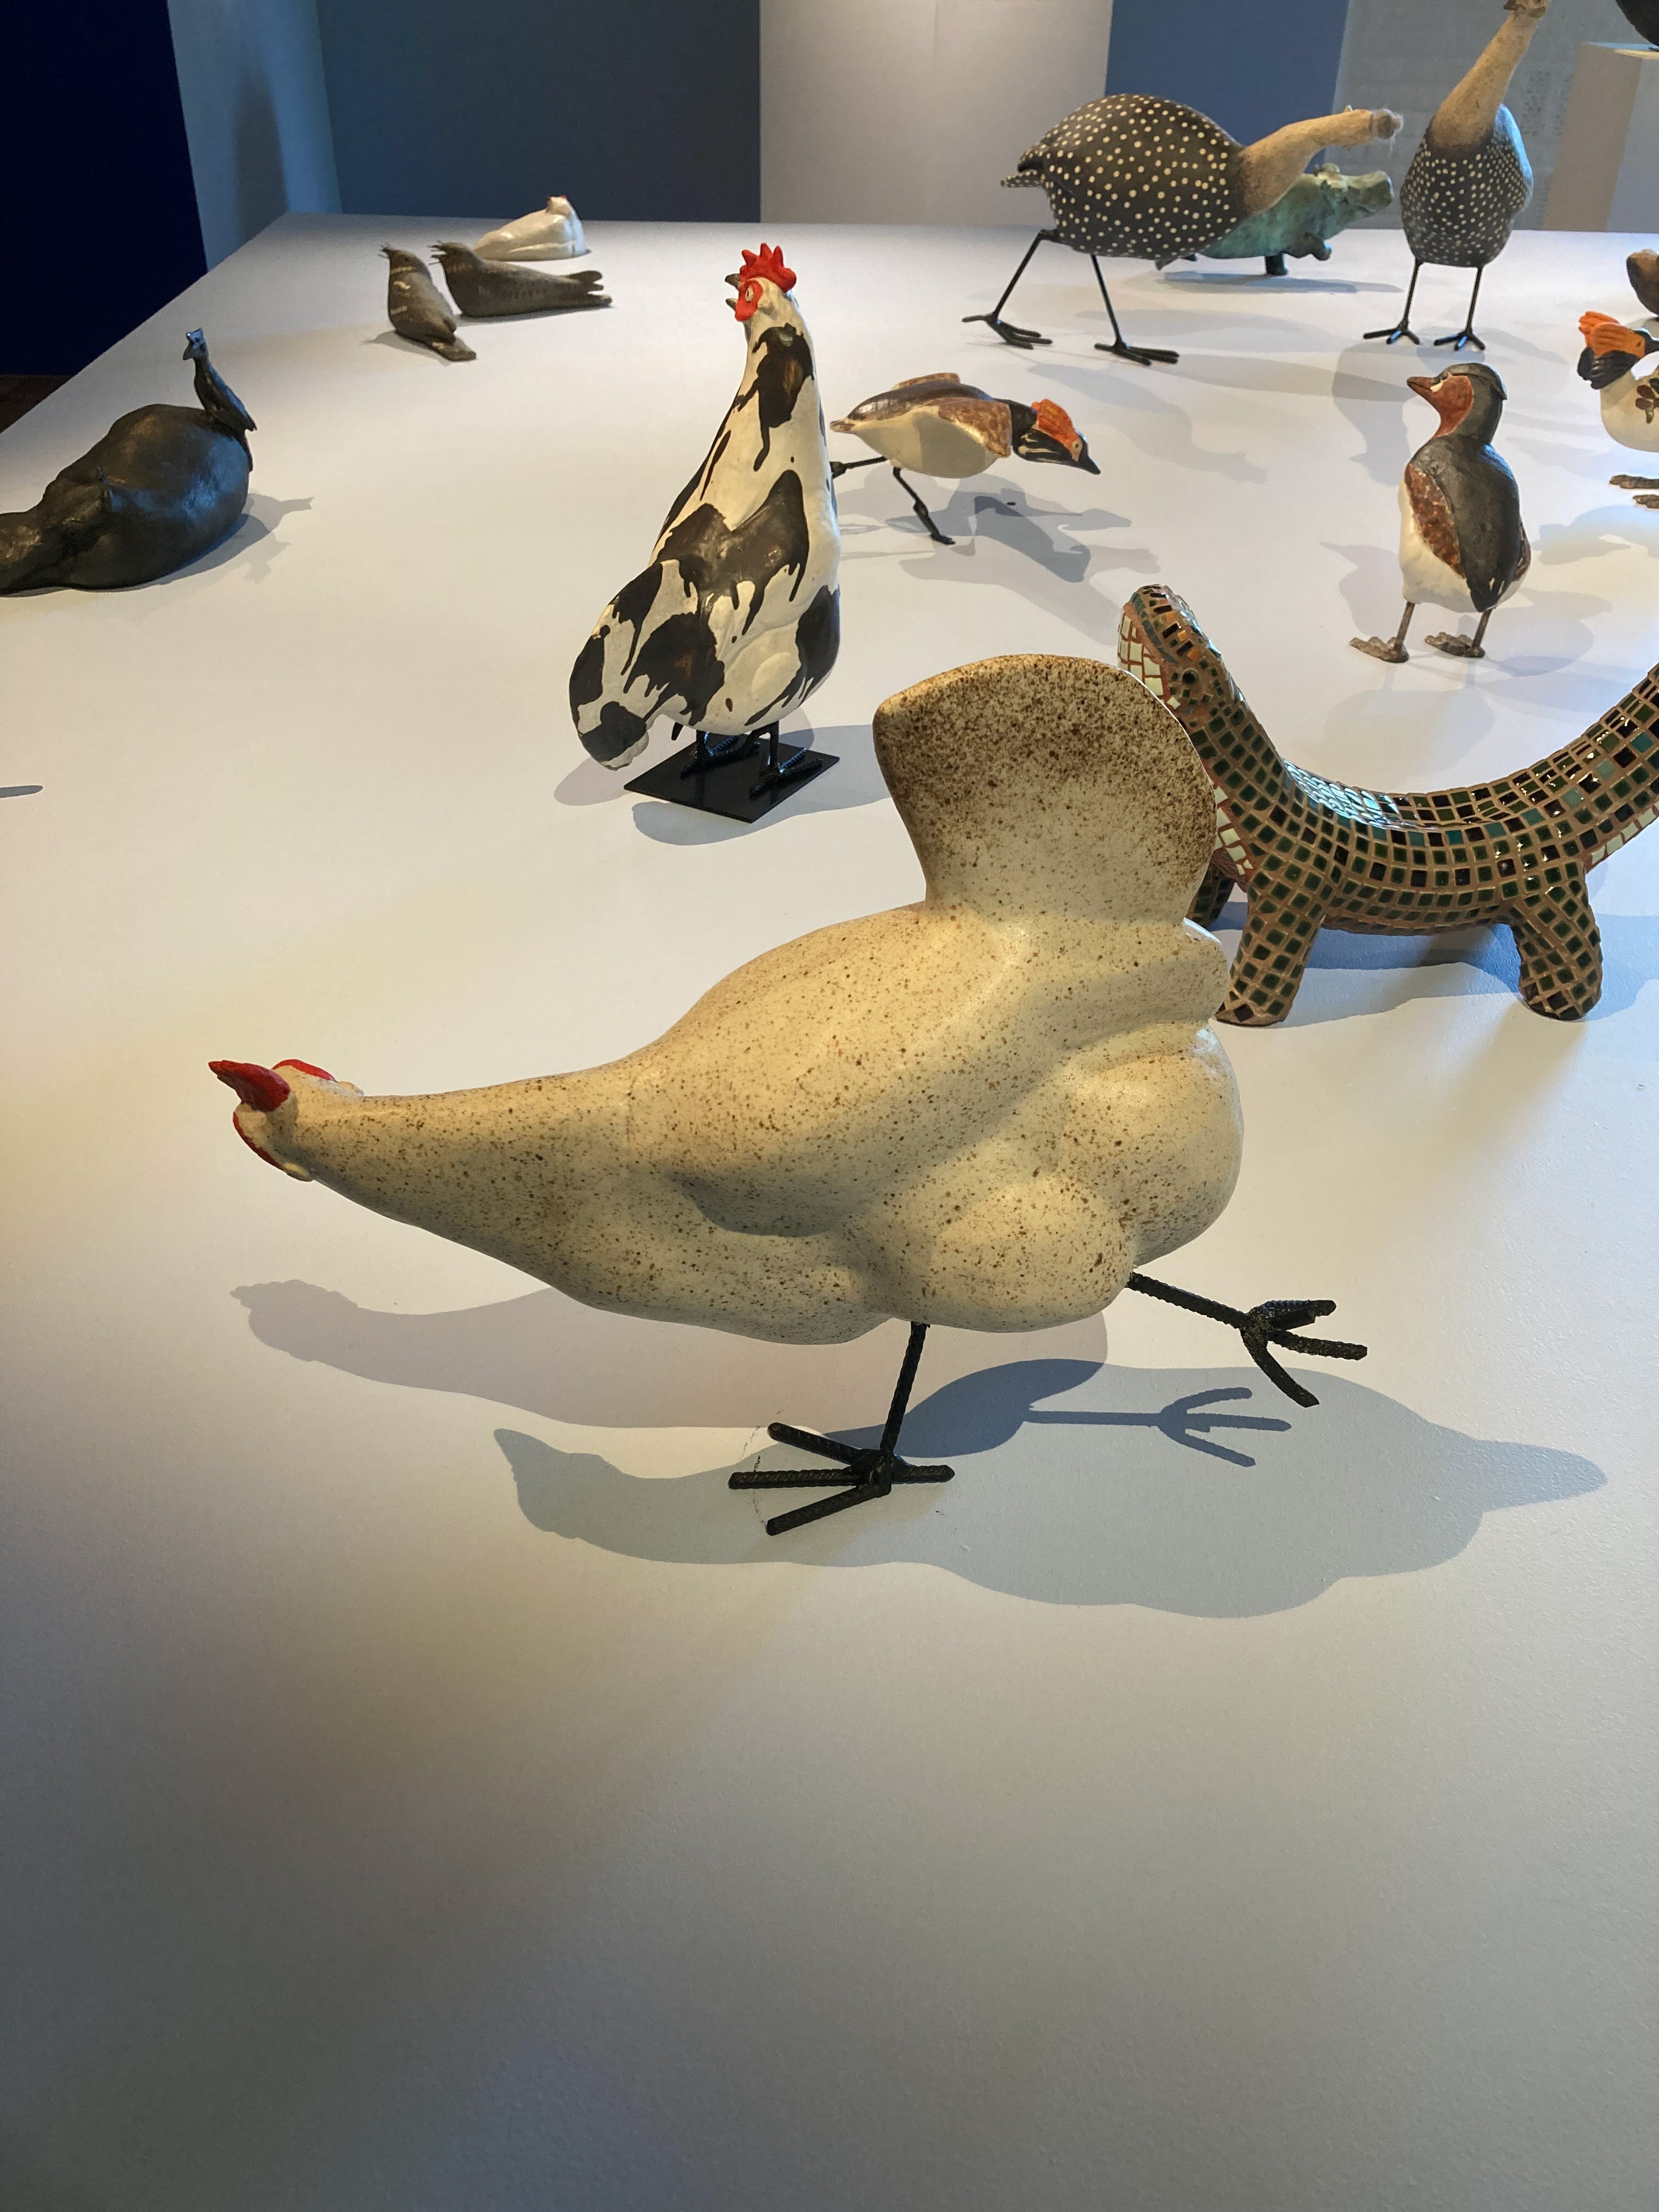 På museet fanns bland mycket annat, en tillfällig utställning om Martin Nilsson - Anpassat liv, om hur fåglar anpassar sig till sina nya livsbetingelser